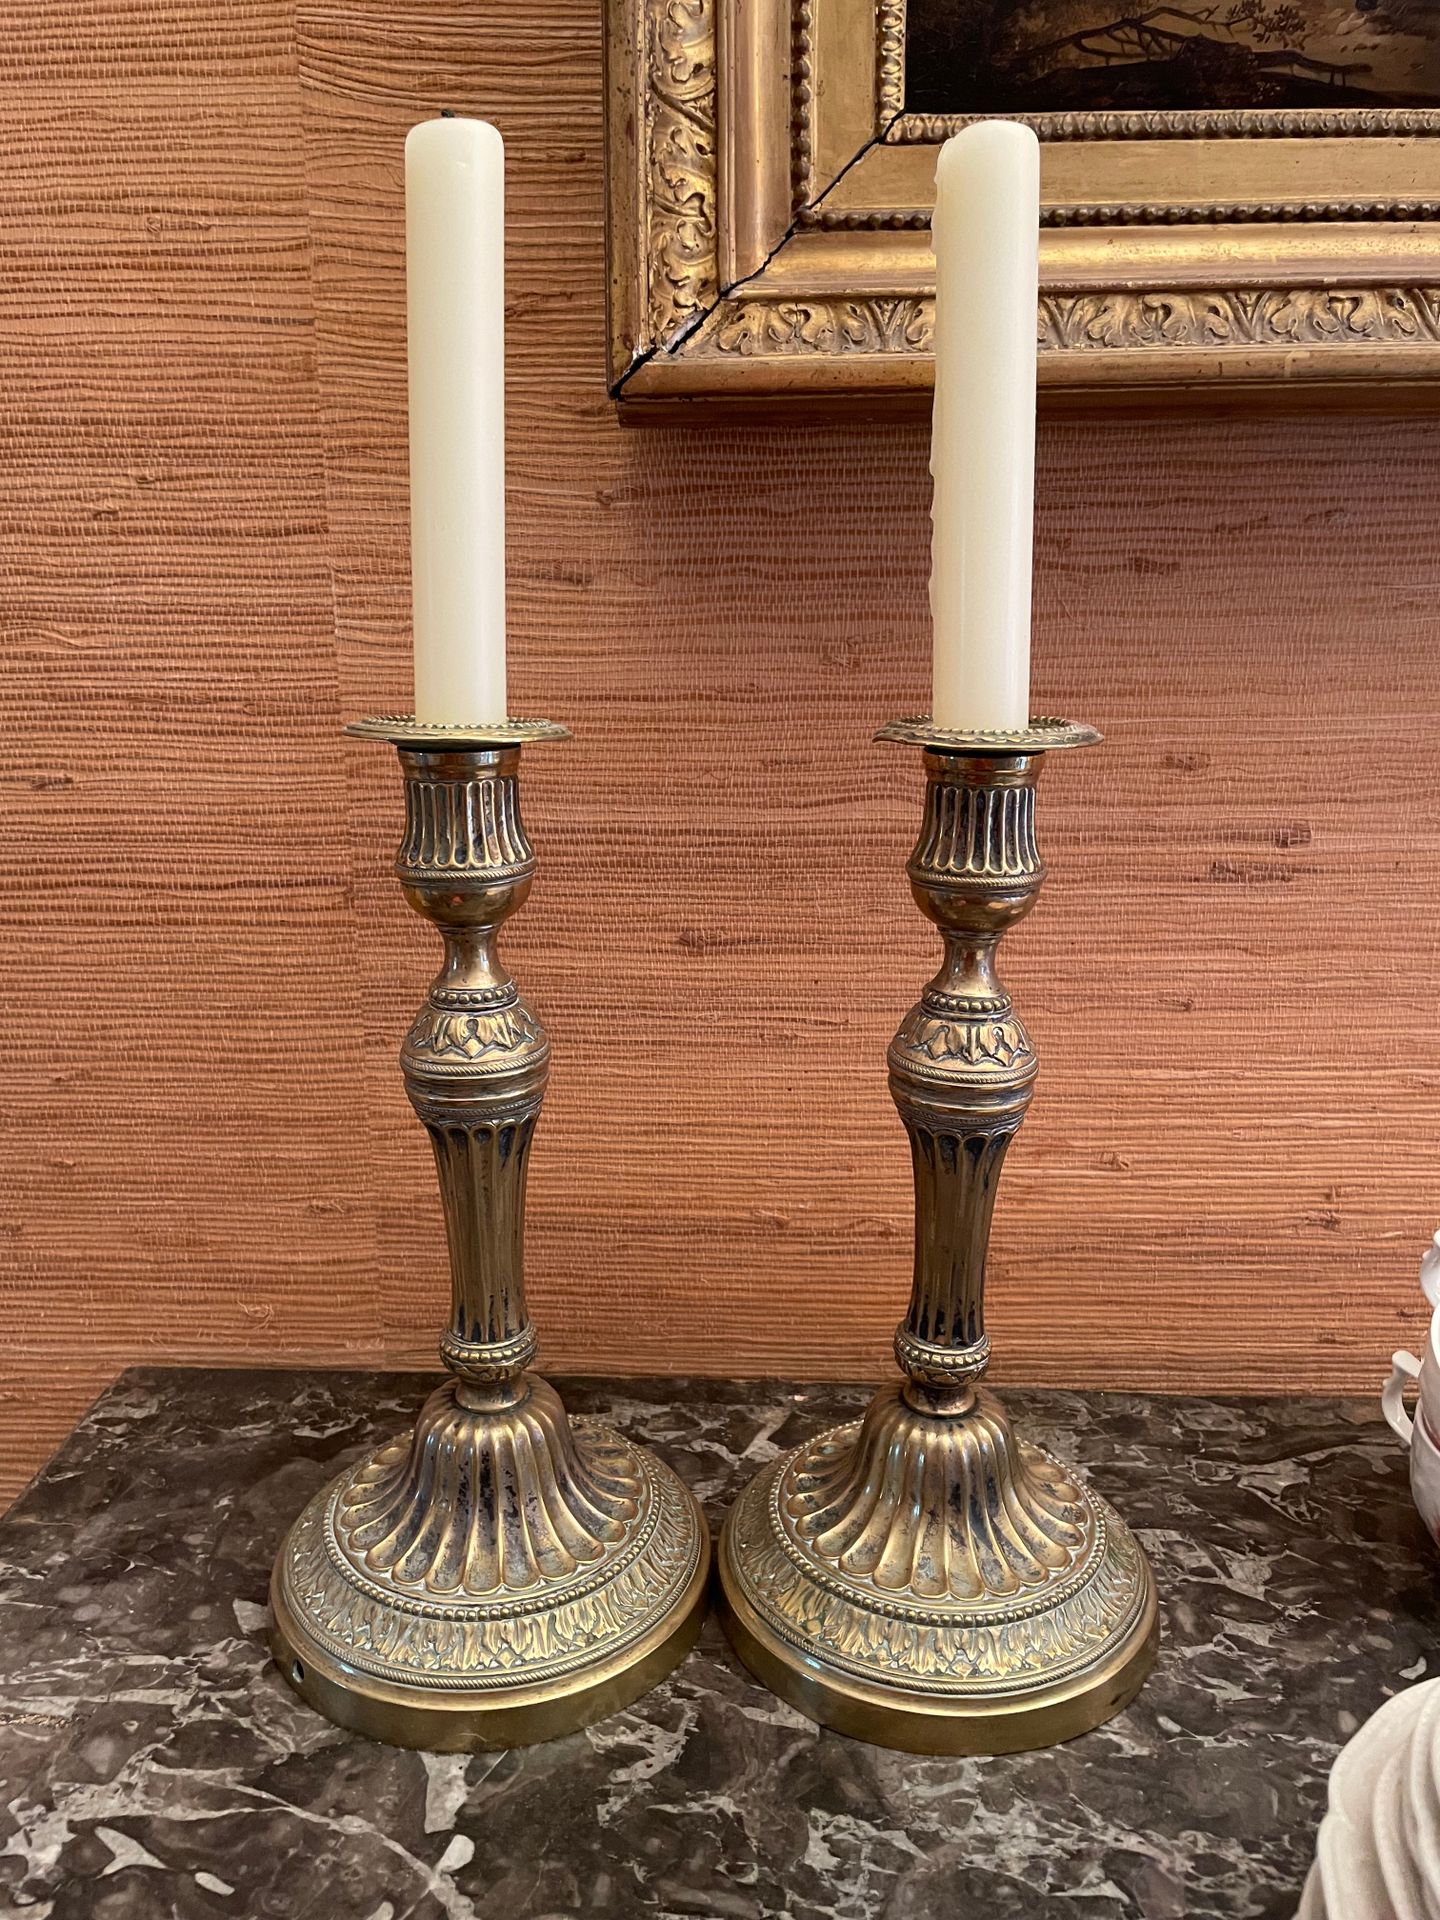 Null Pareja de candelabros
En bronce
Decorados con flautas y hojas de acanto
Sob&hellip;